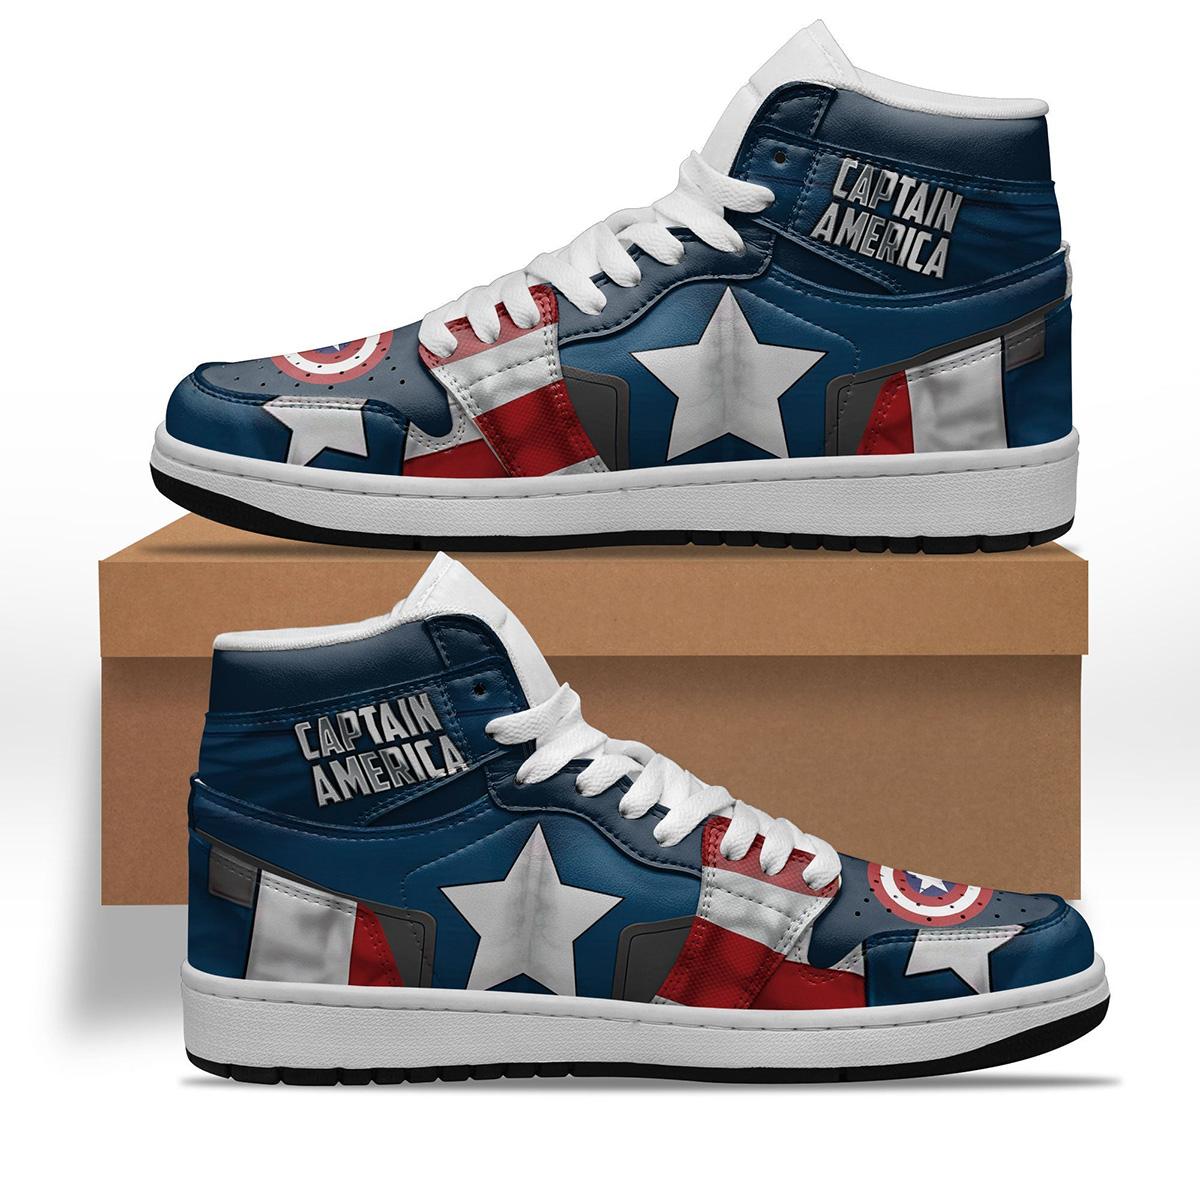 Avenger Captain America Shoes Custom